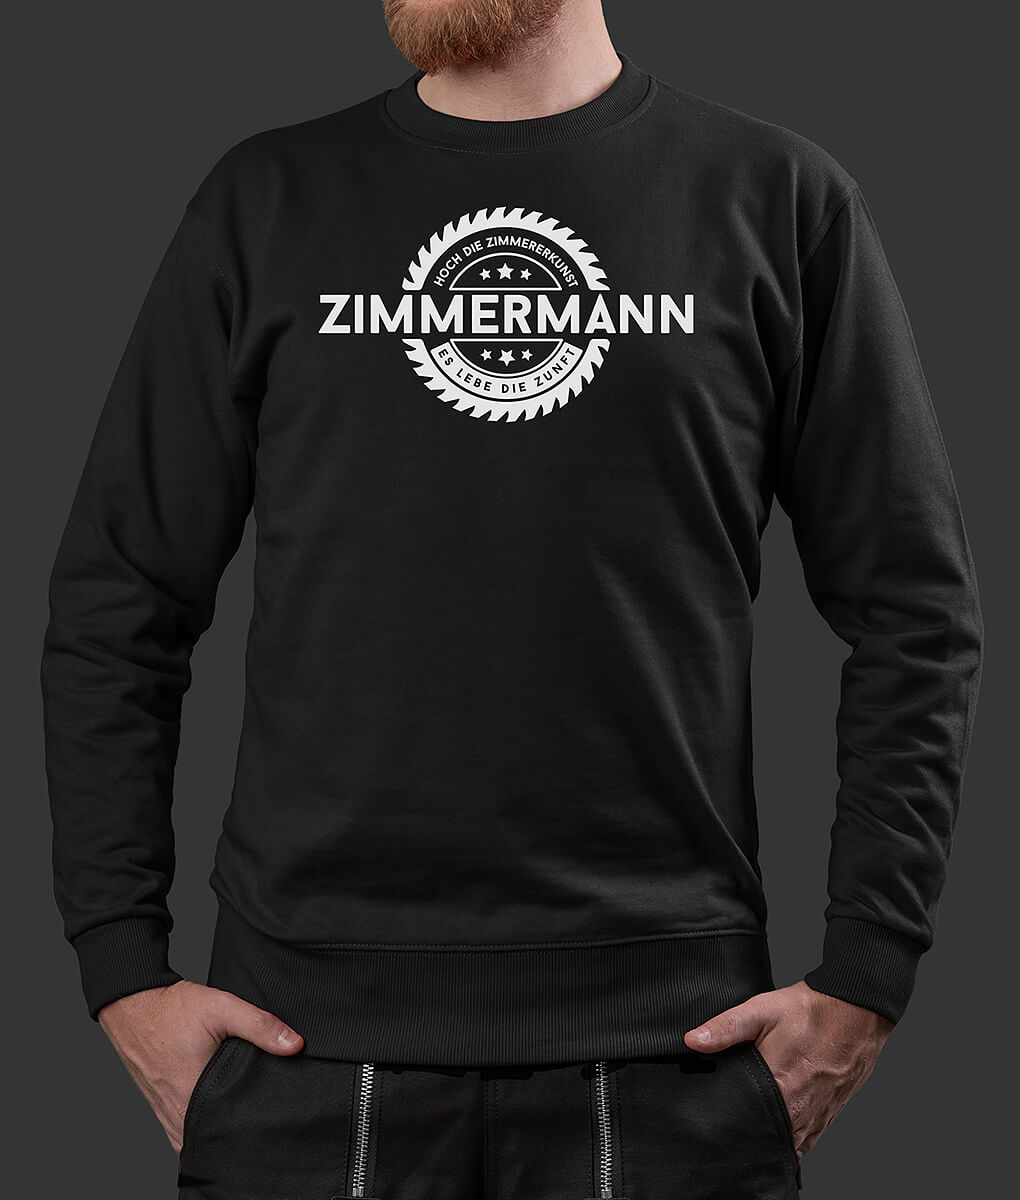 Sweater Stefan Säge Zimmermann Brust schwarz L